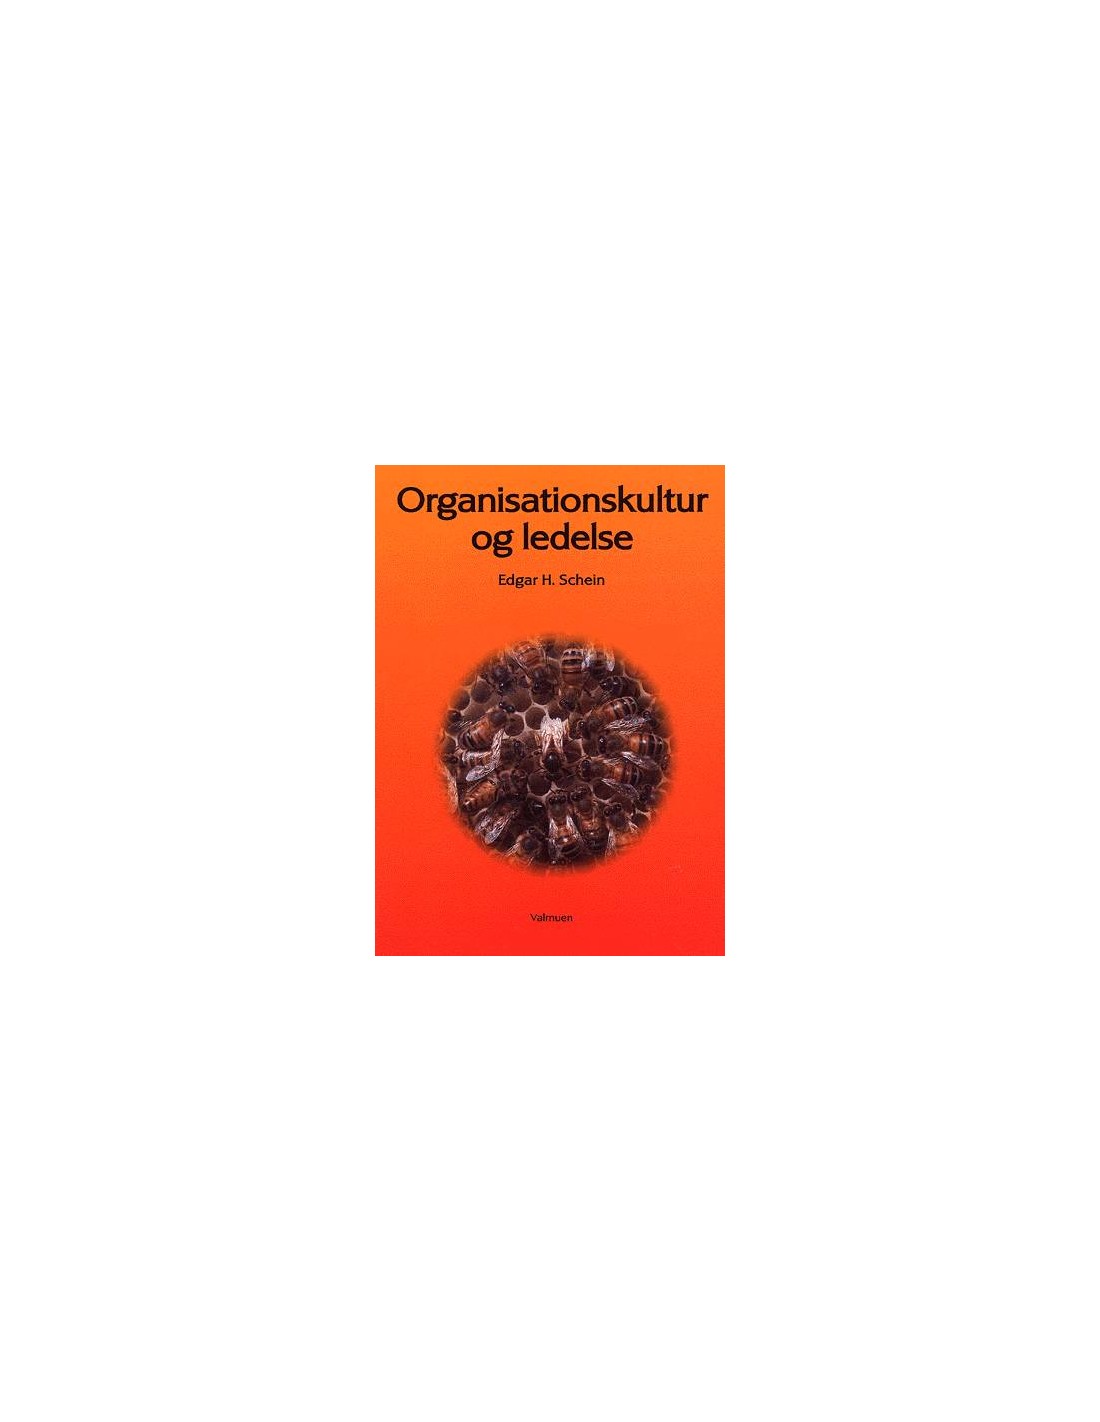 Organisationskultur ledelse ISBN 9788788741131 skrevet af Edgar H. Schein